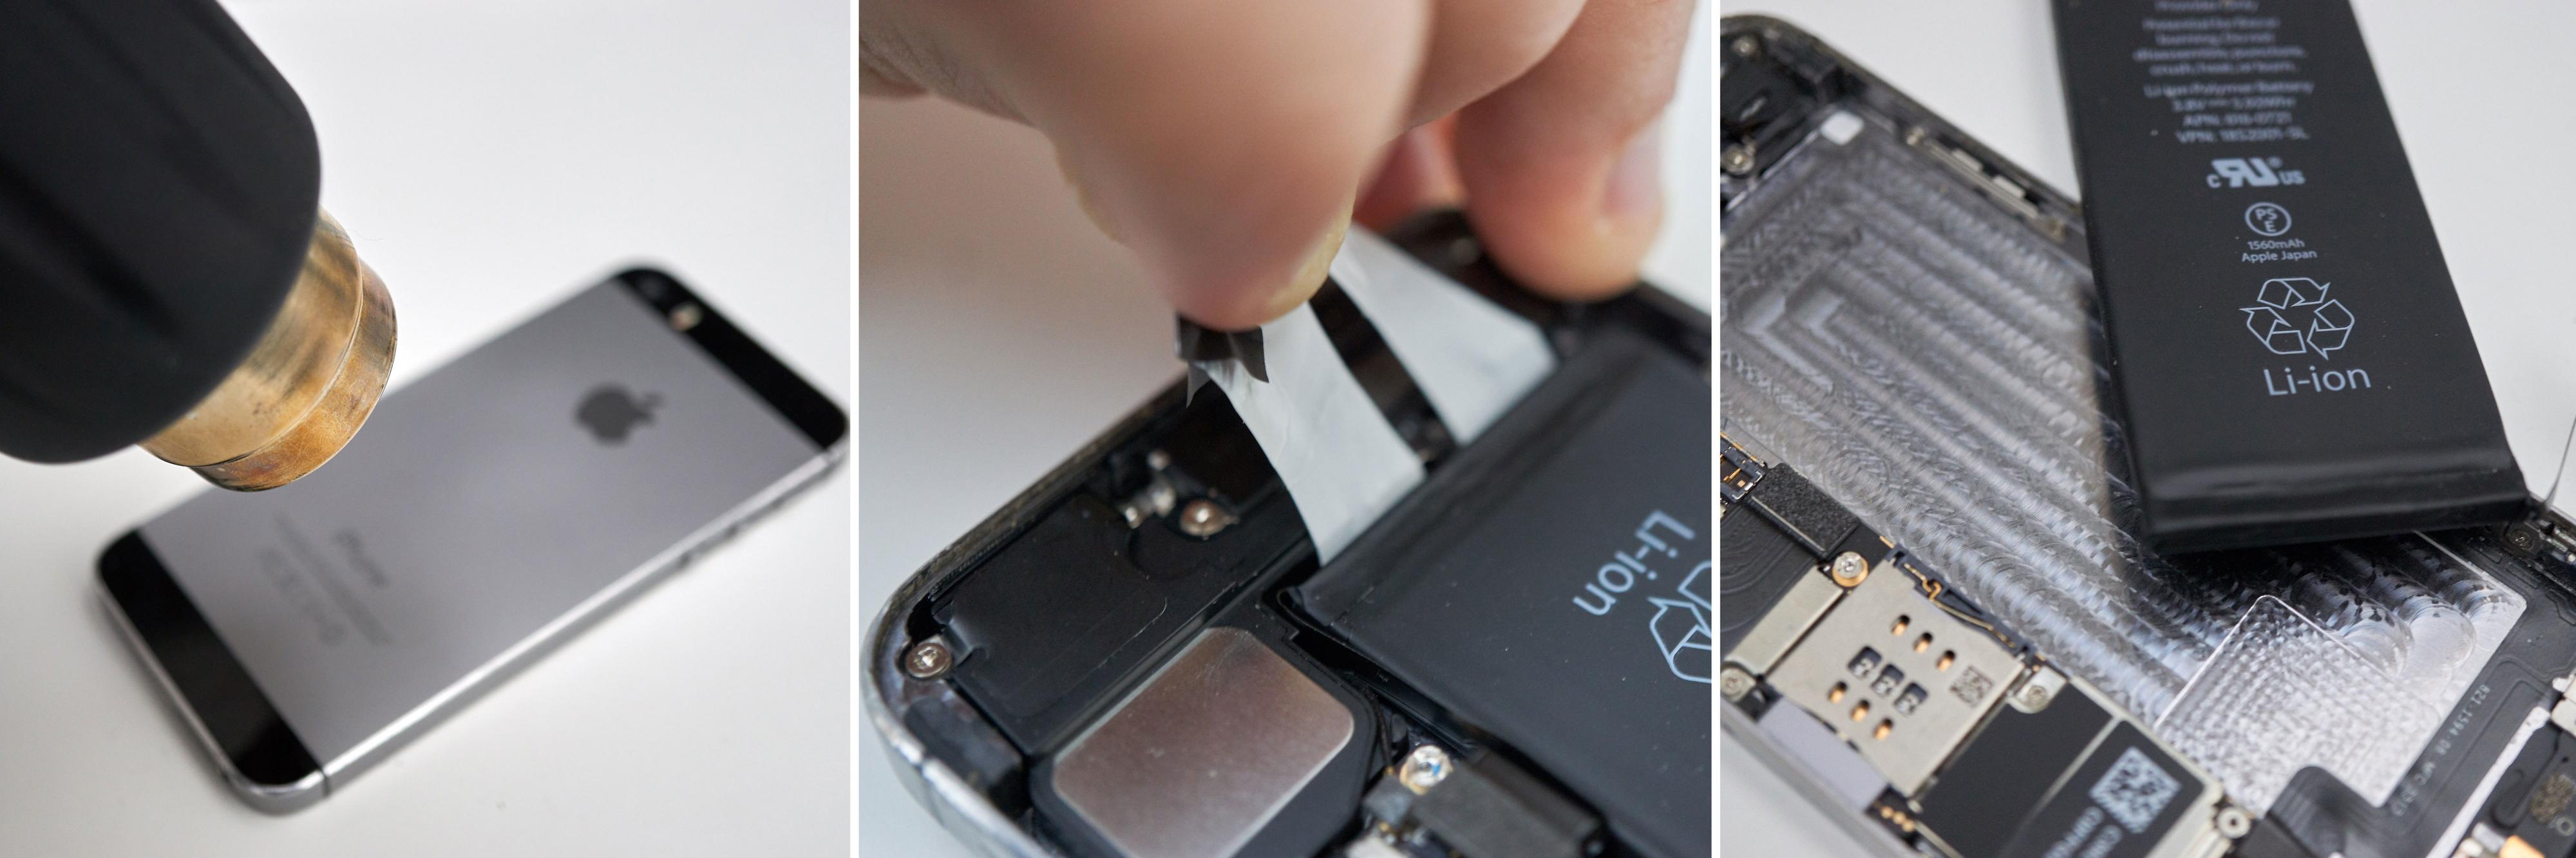 Litt oppvarming og fingernemhet gjør fjerning av batteriet til en smal sak.